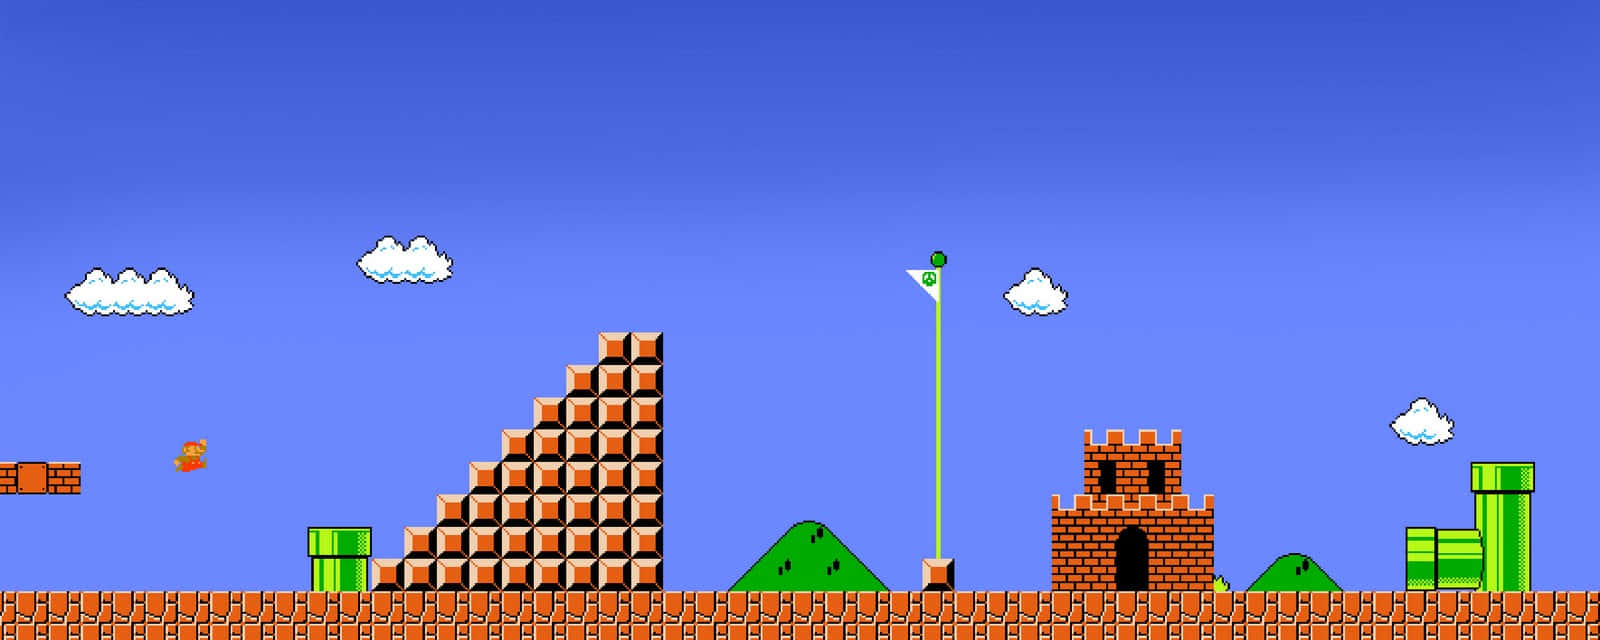 En Nintendo Mario spil med et tårn og et slot i baggrunden. Wallpaper